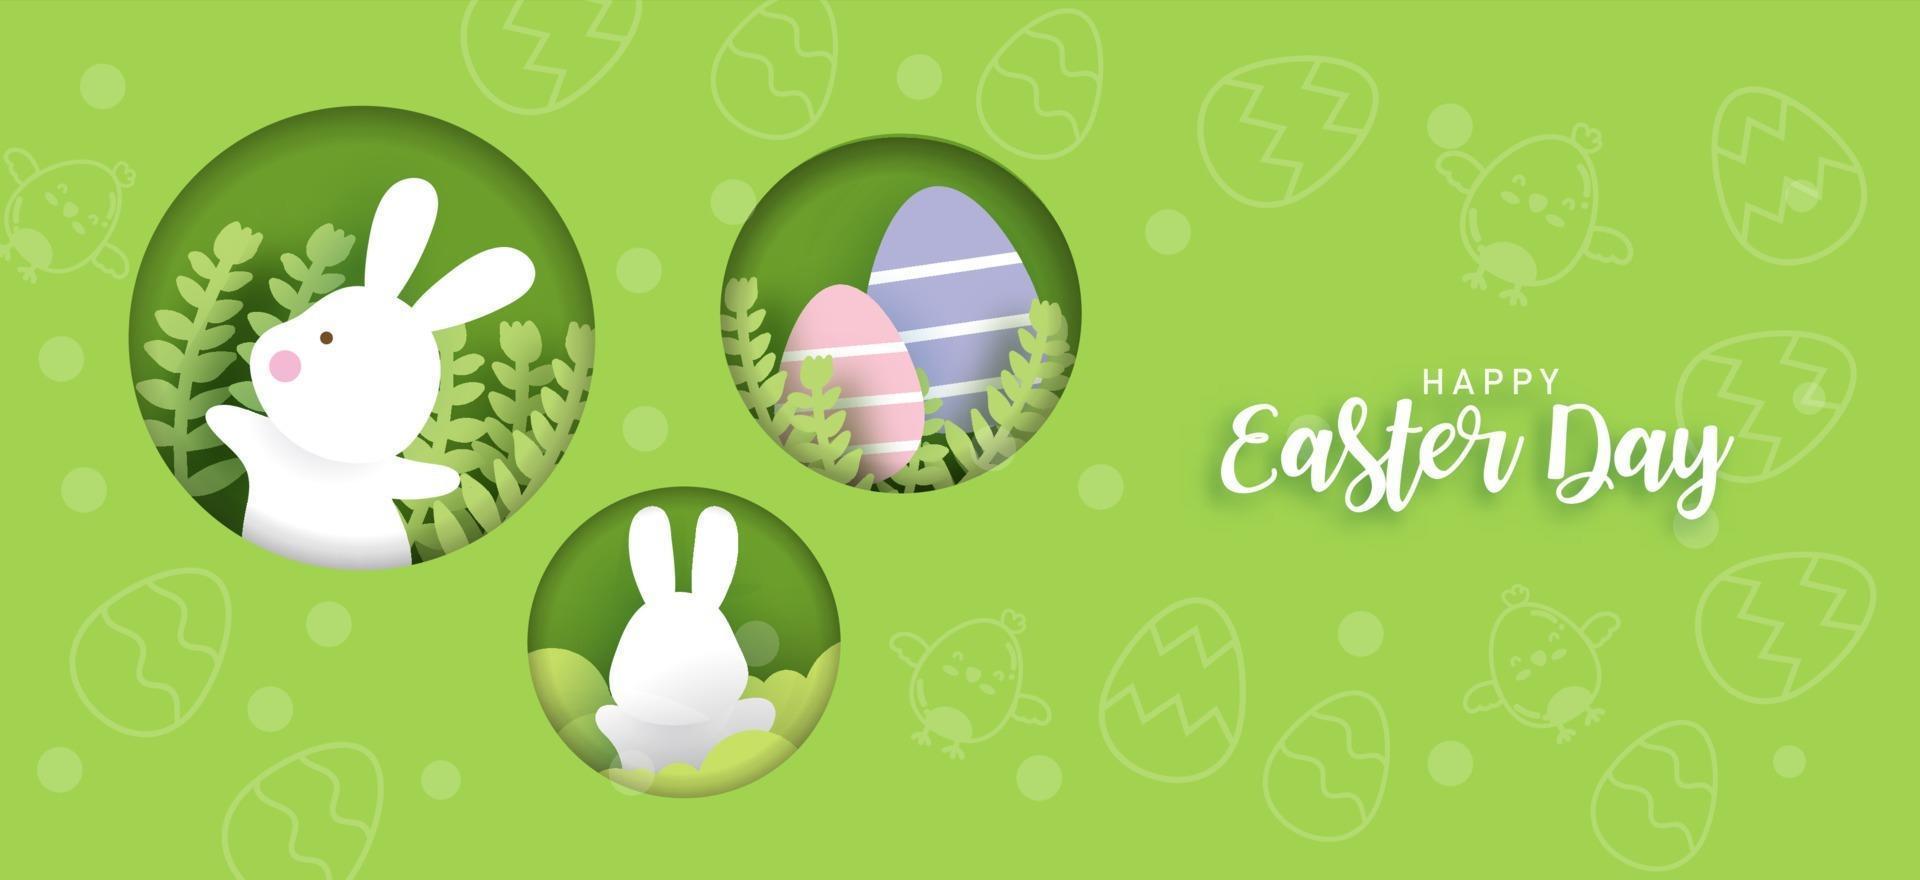 Ostertageskarte und Hintergrund mit niedlichen Kaninchen und Ostereiern. vektor